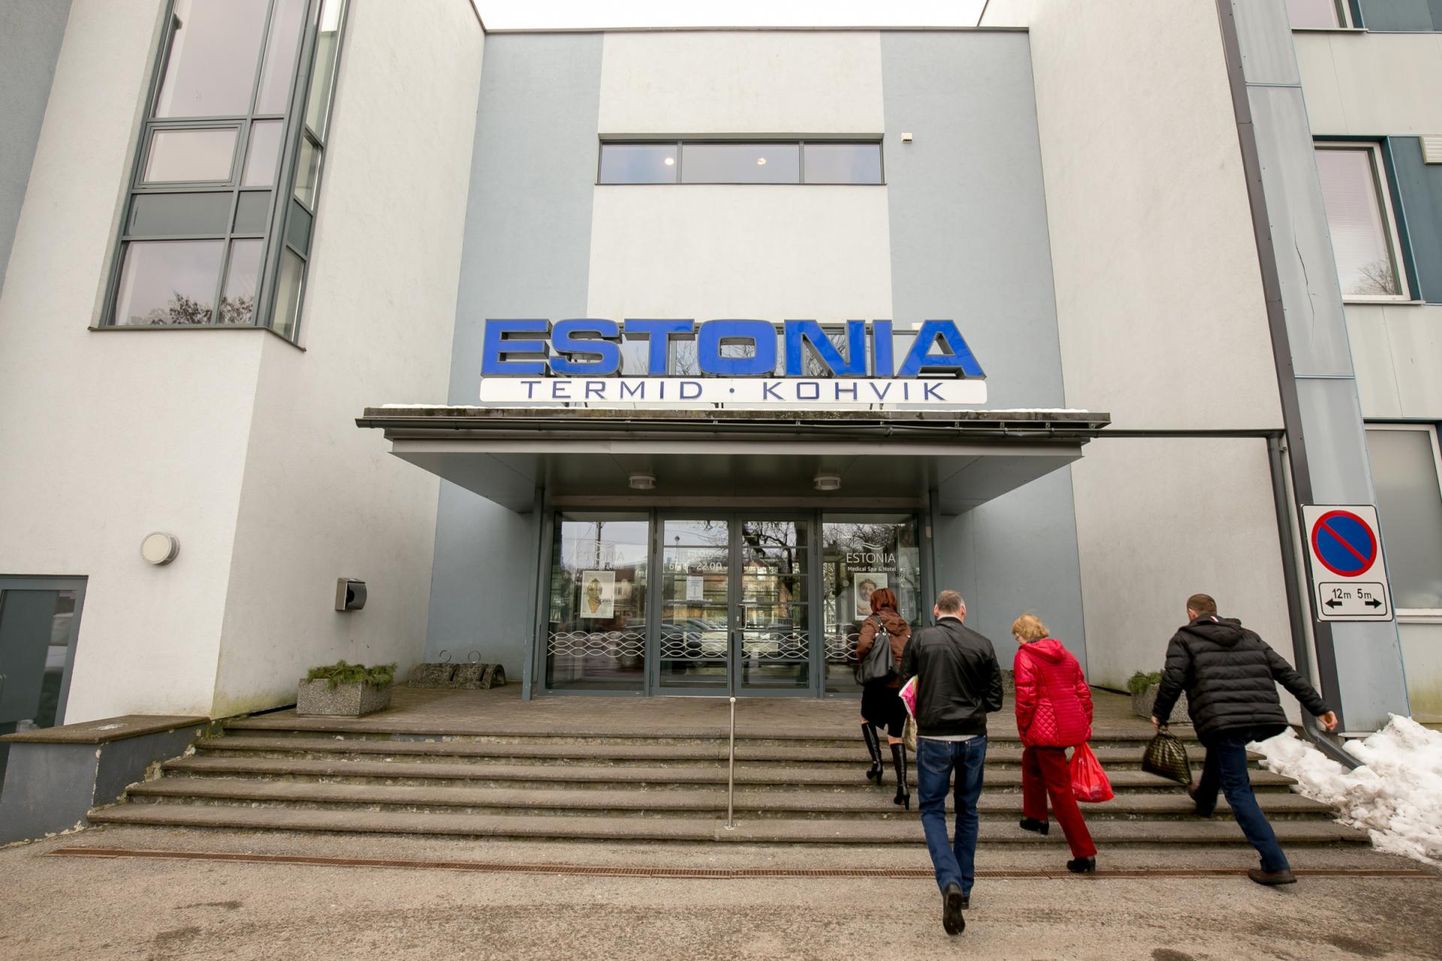 Pärnu linnavalitsus kuulutas välja linnale kuuluva spaahotelli Estonia nõukogu liikme Teet Kursi ametis jätkamiseks konkursi.